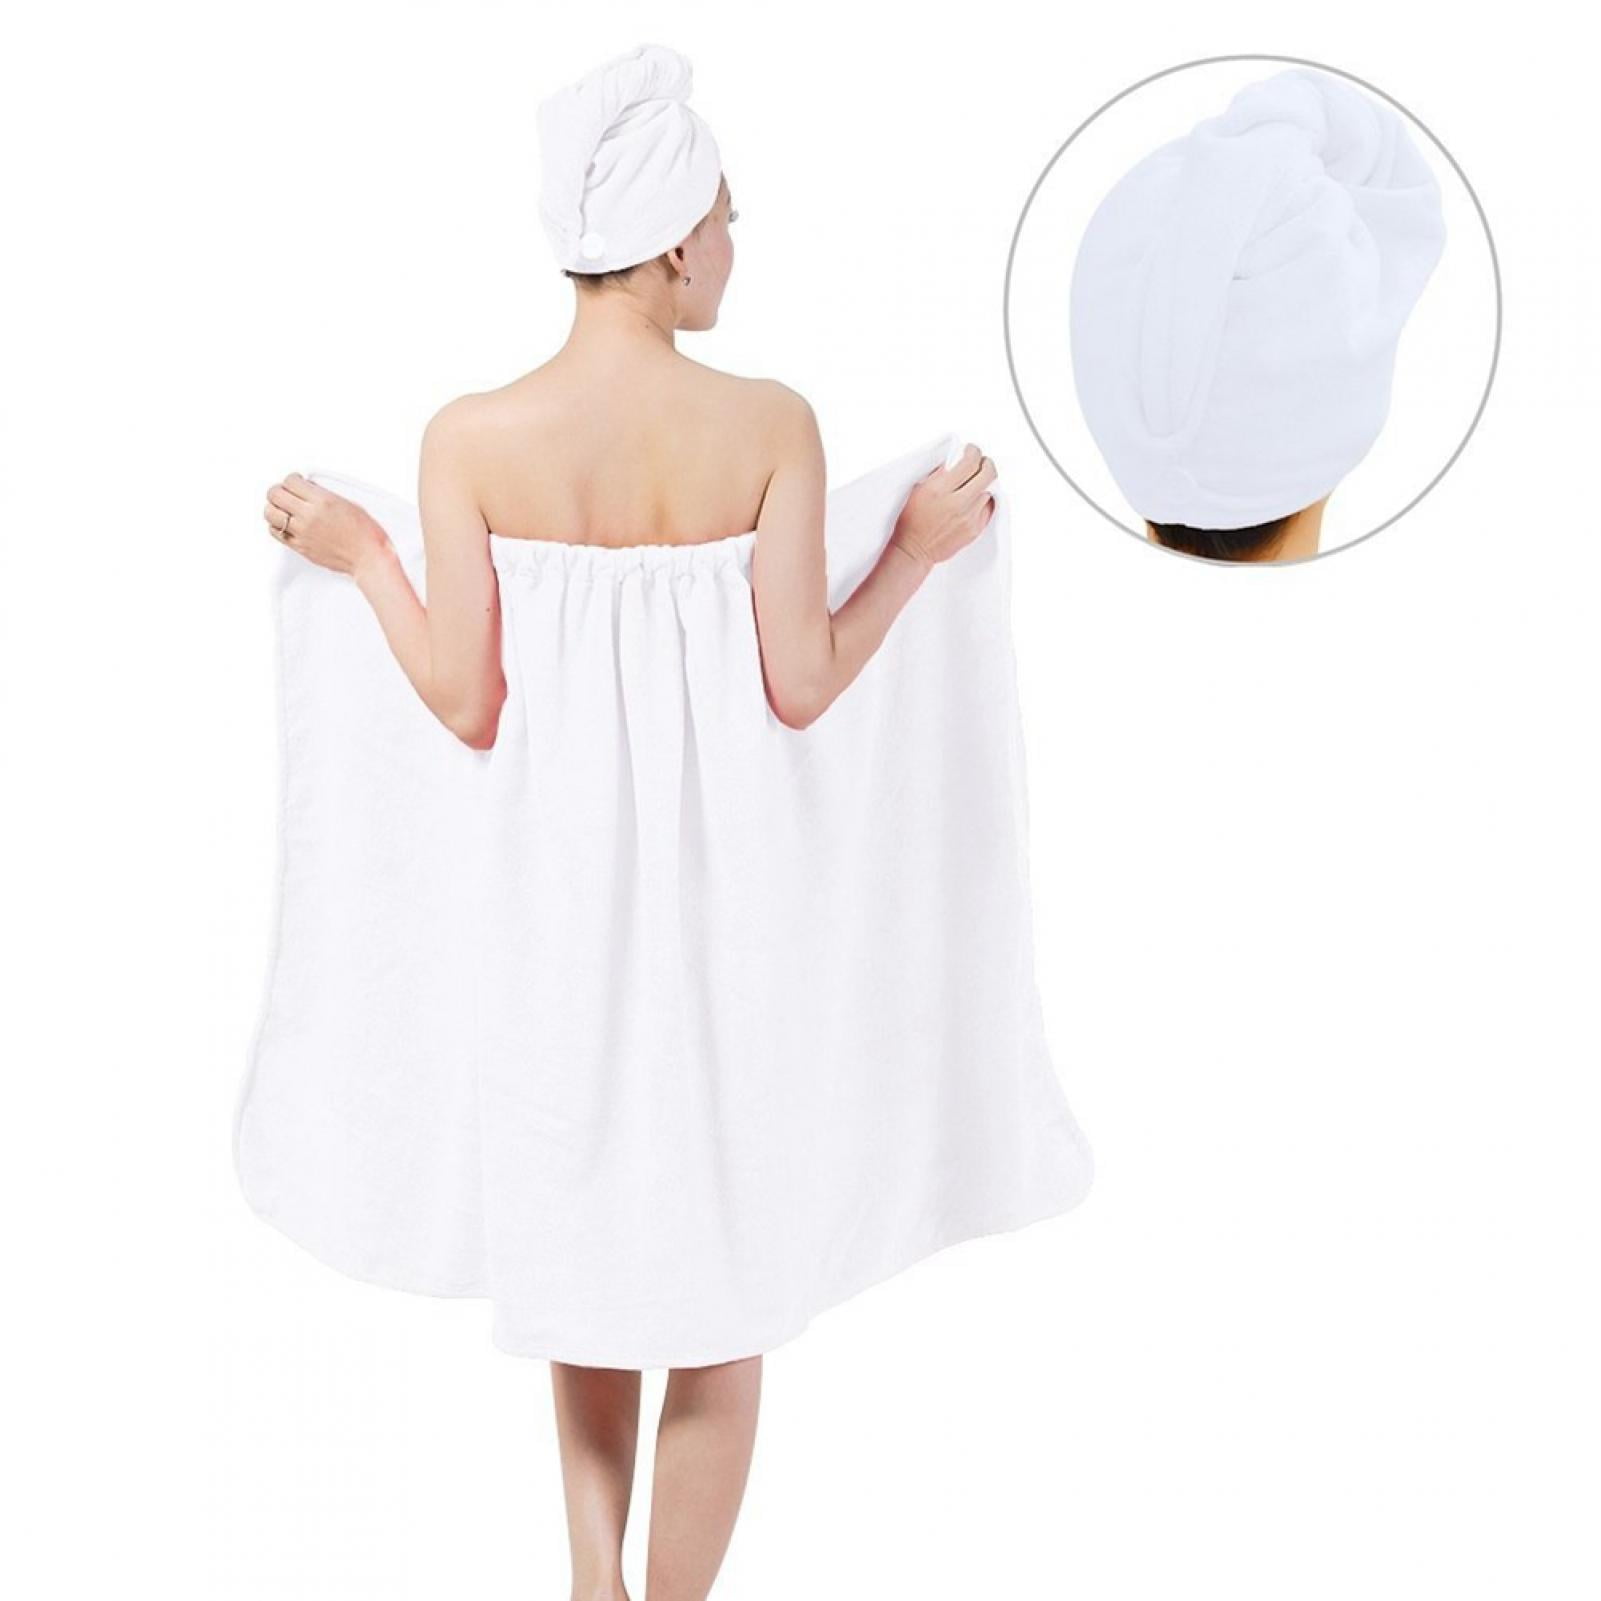 Women Soft Spa Bath Body Wrap Set Towel Bathrobe w/ Fast Dry Hair Drying